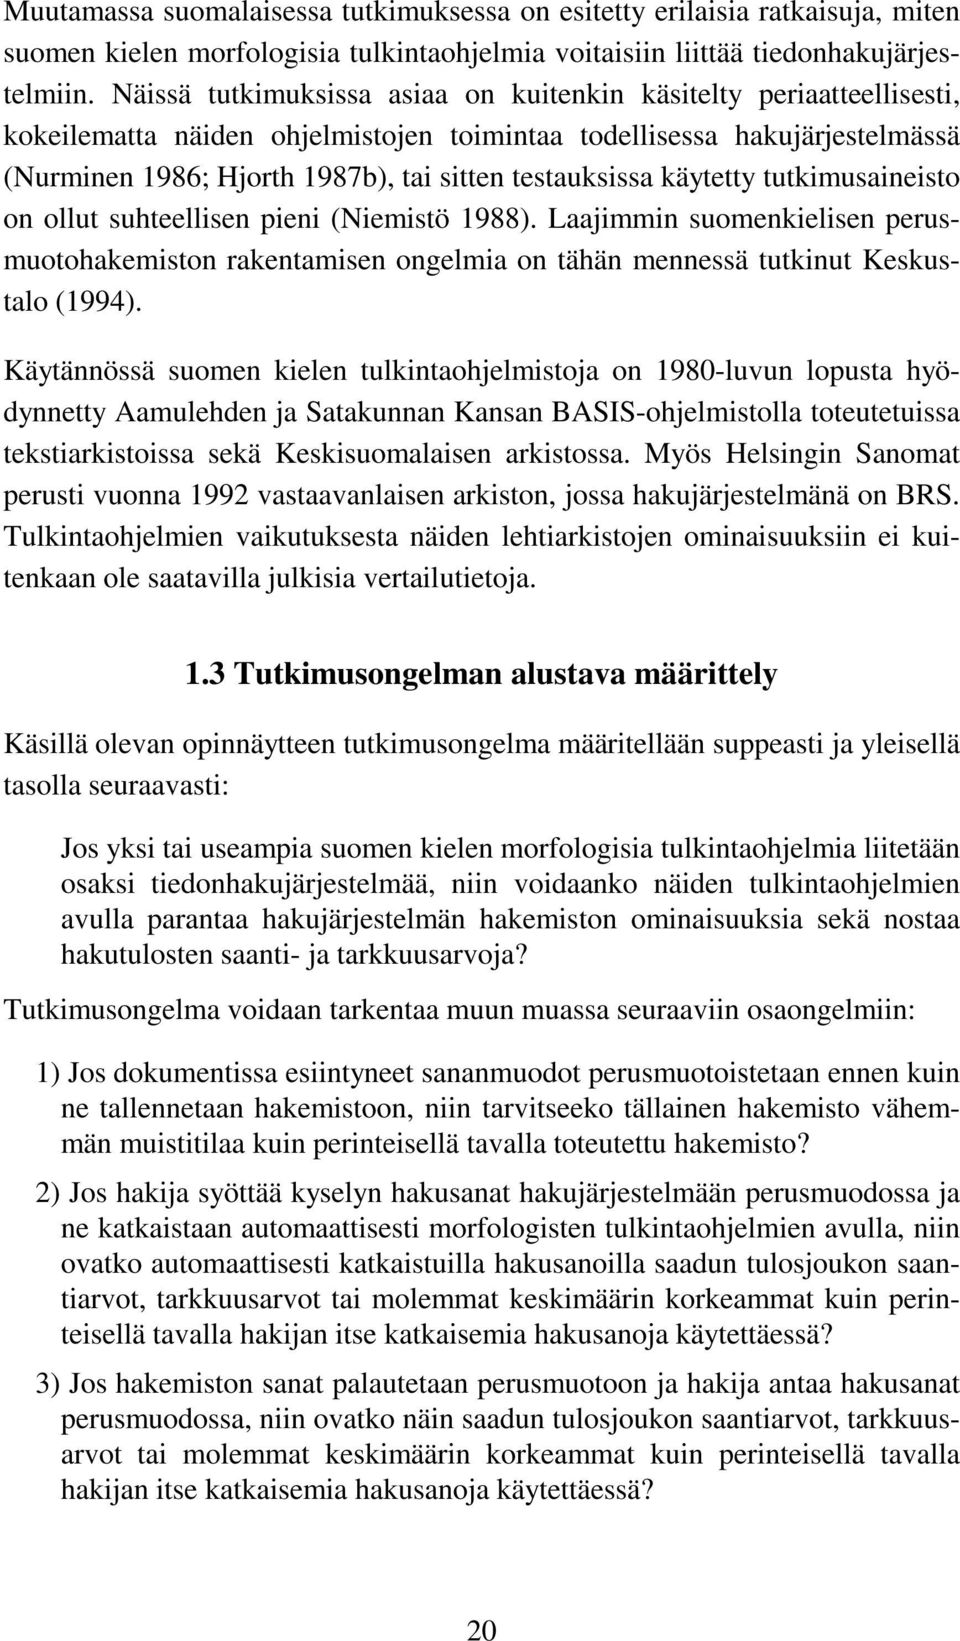 testauksissa käytetty tutkimusaineisto on ollut suhteellisen pieni (Niemistö 1988). Laajimmin suomenkielisen perusmuotohakemiston rakentamisen ongelmia on tähän mennessä tutkinut Keskustalo (1994).